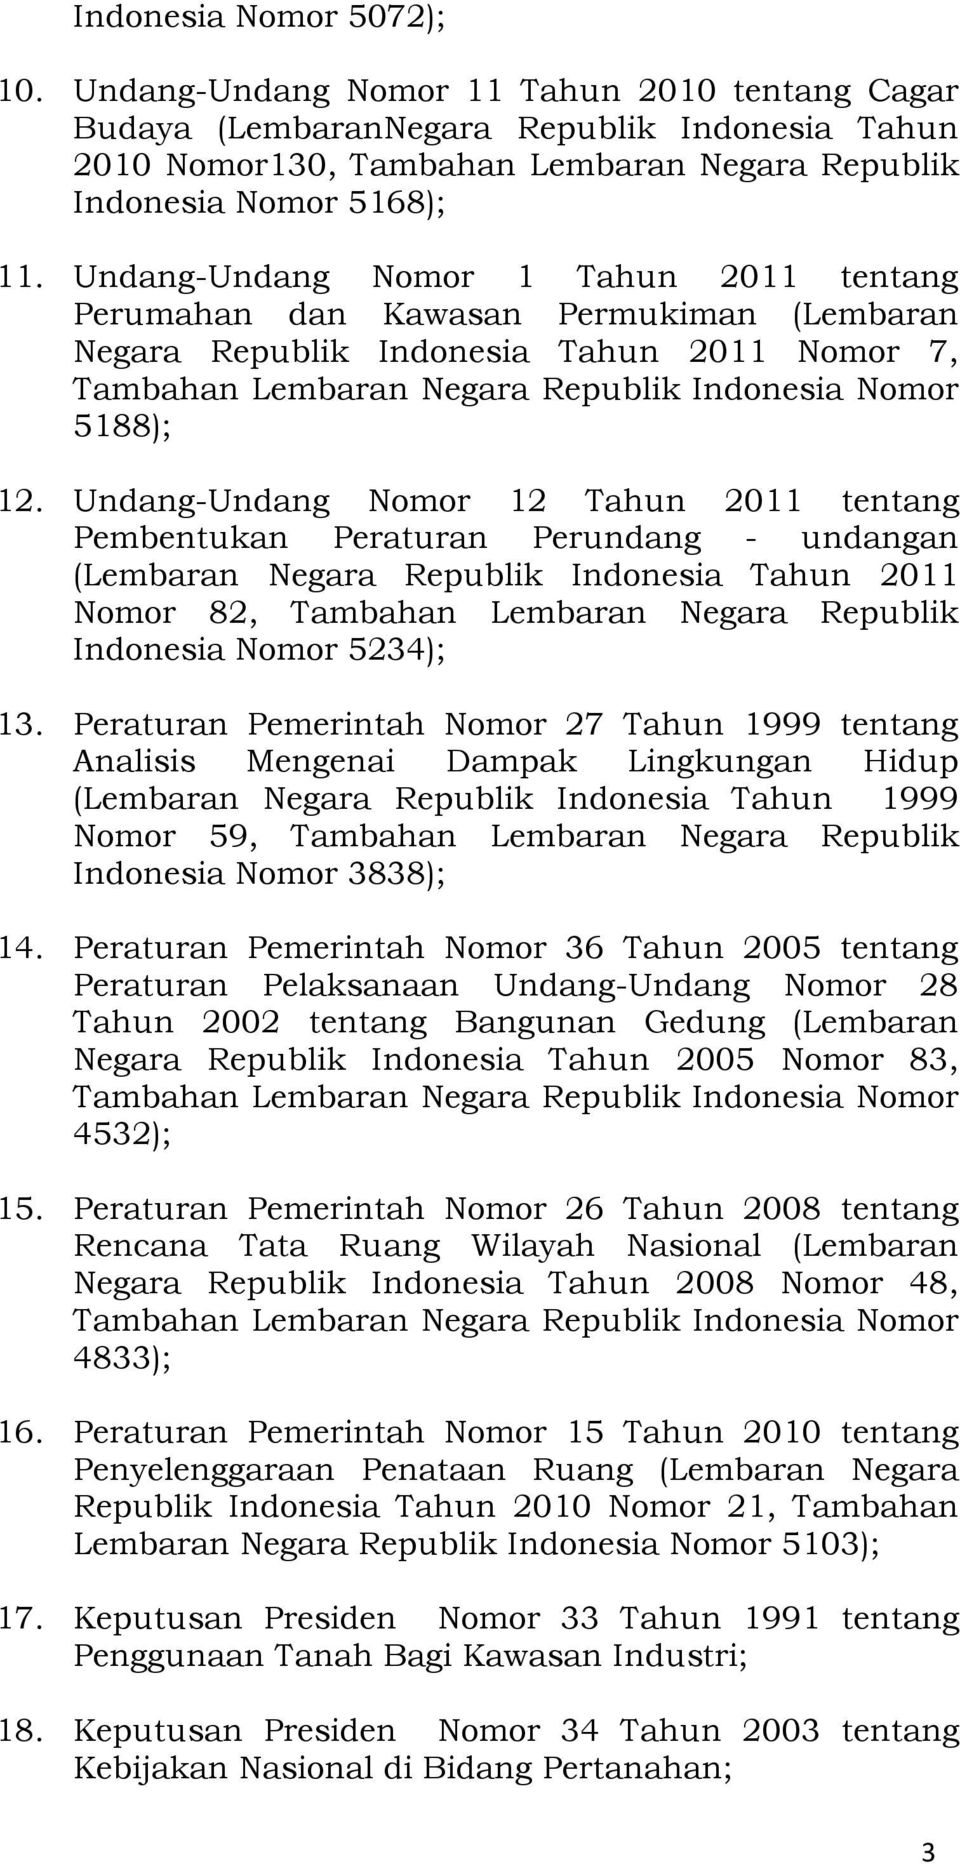 Undang-Undang Nomor 12 Tahun 2011 tentang Pembentukan Peraturan Perundang - undangan (Lembaran Negara Republik Indonesia Tahun 2011 Nomor 82, Tambahan Lembaran Negara Republik Indonesia Nomor 5234);